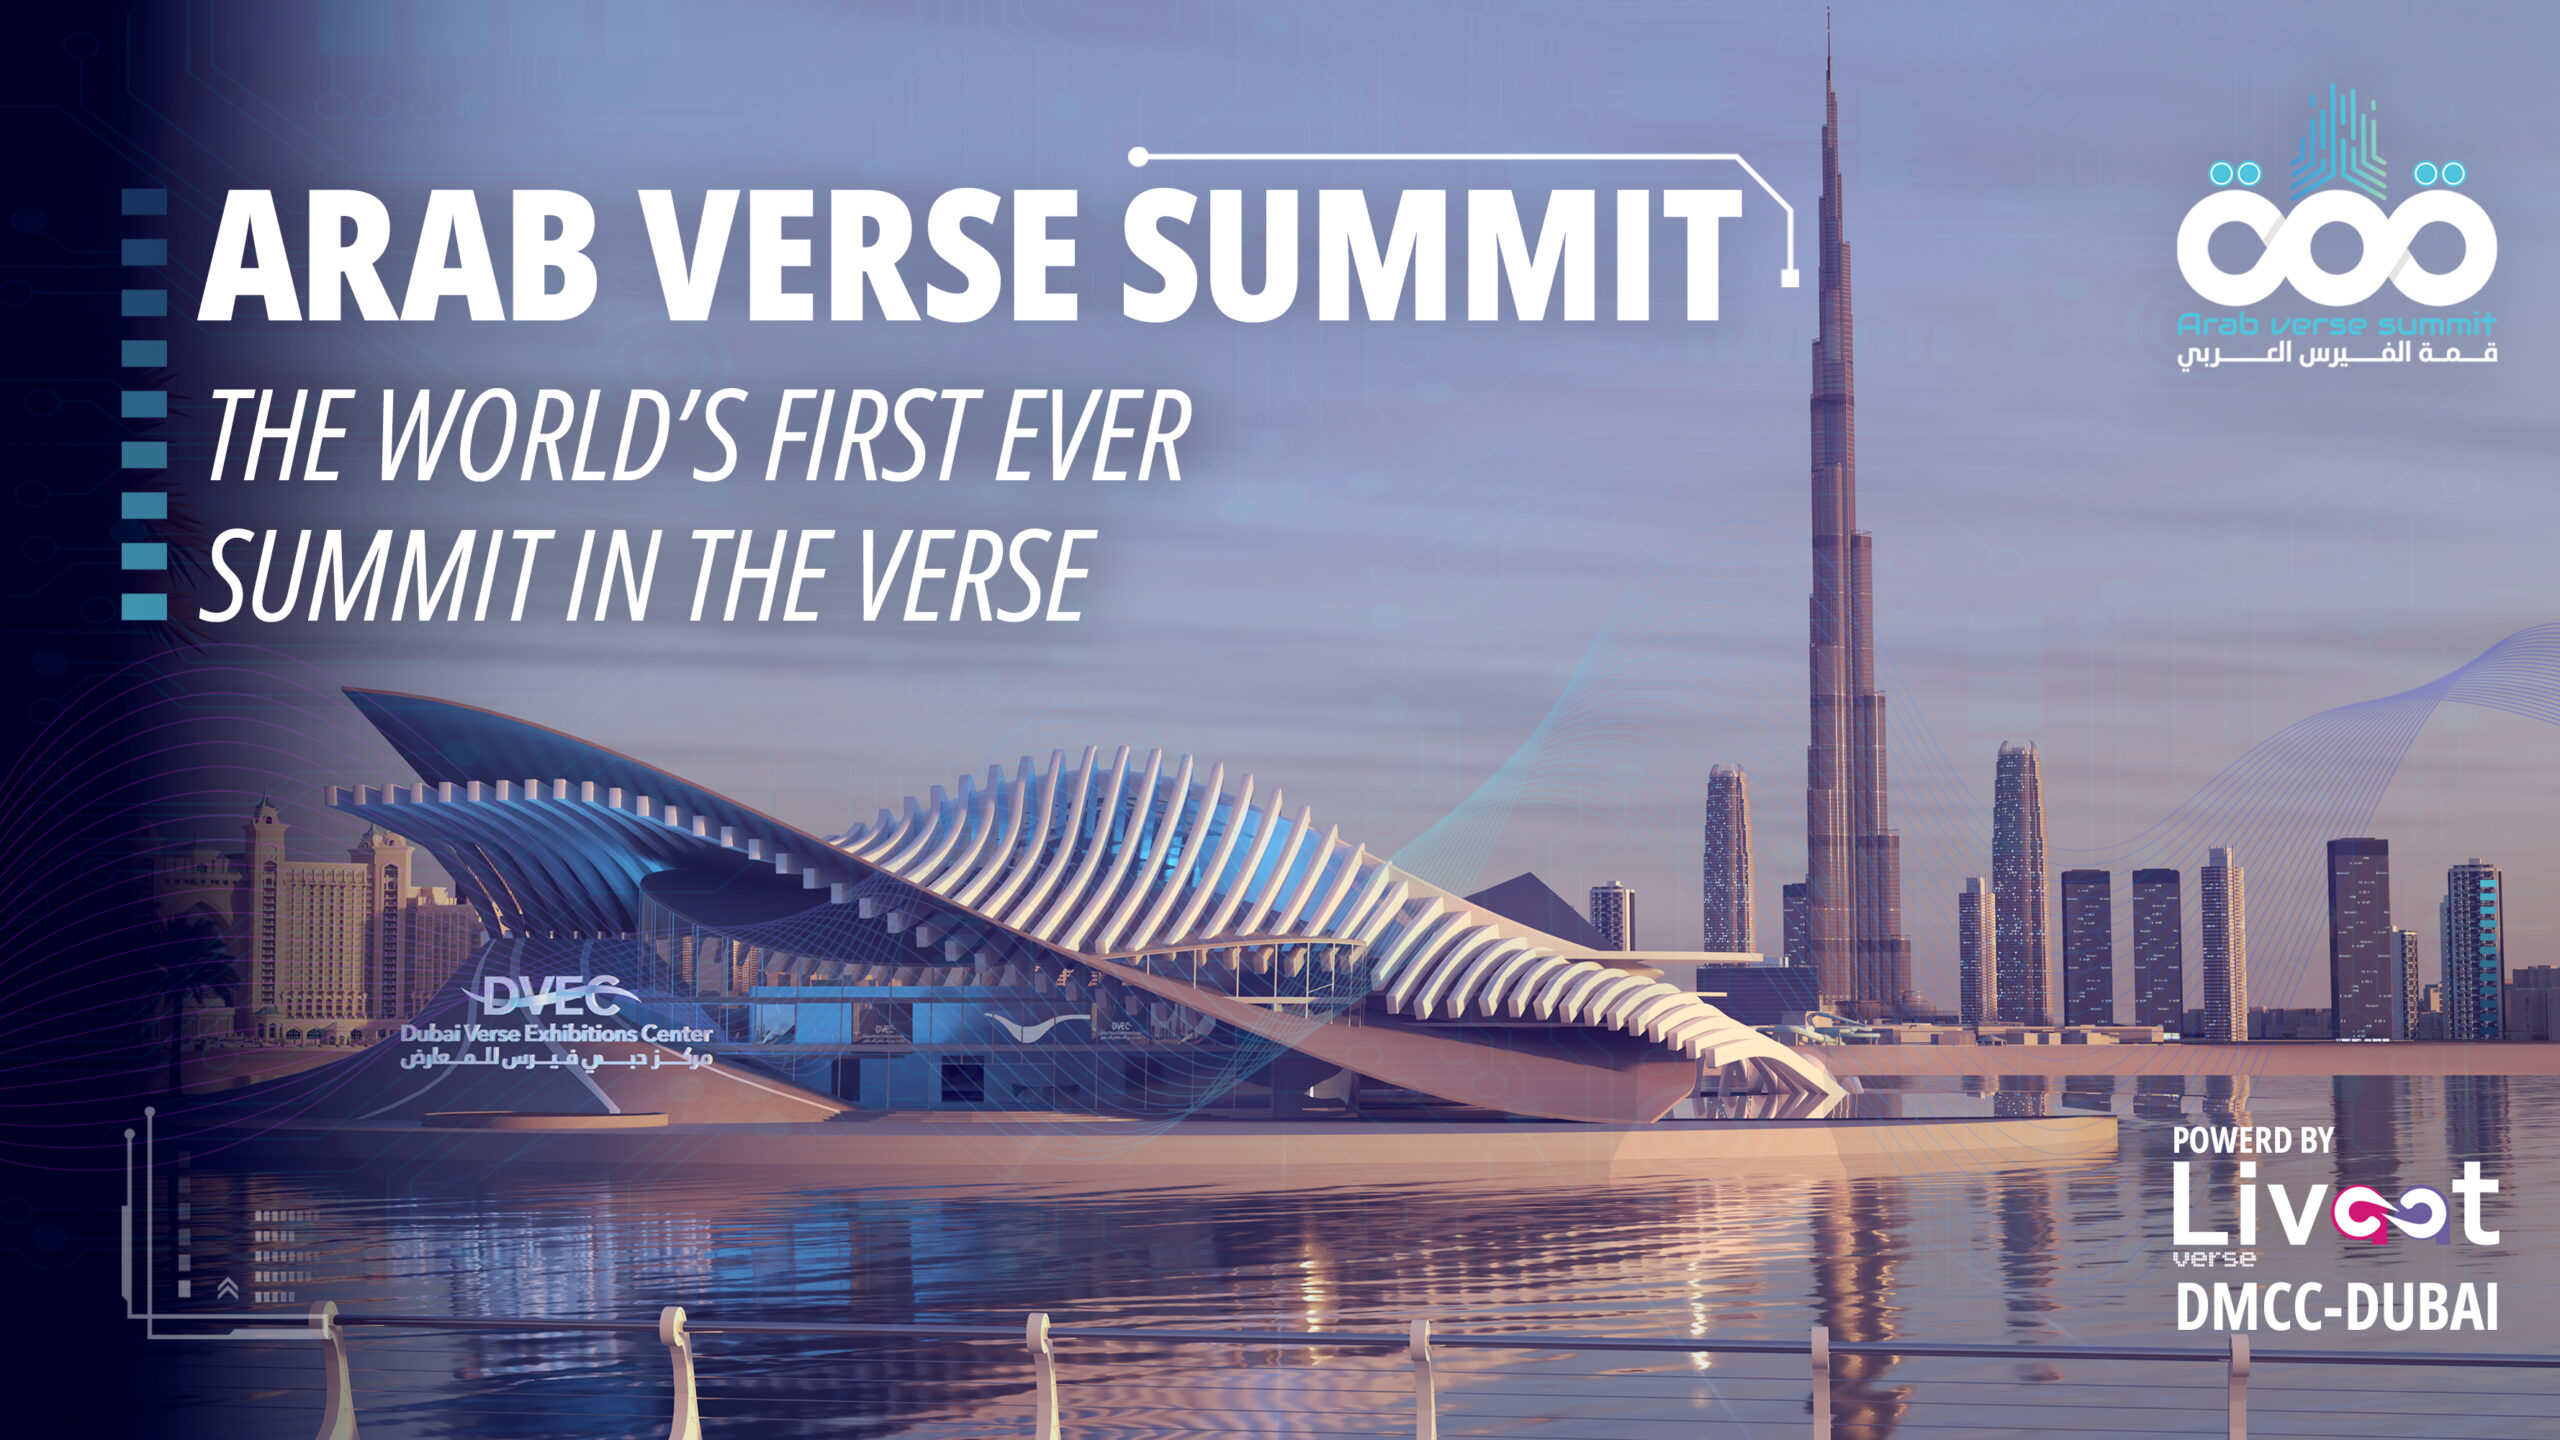 لأول مرة في العالم تنطلق من دبي المستقبل القمة العربية الأولى للفيرس